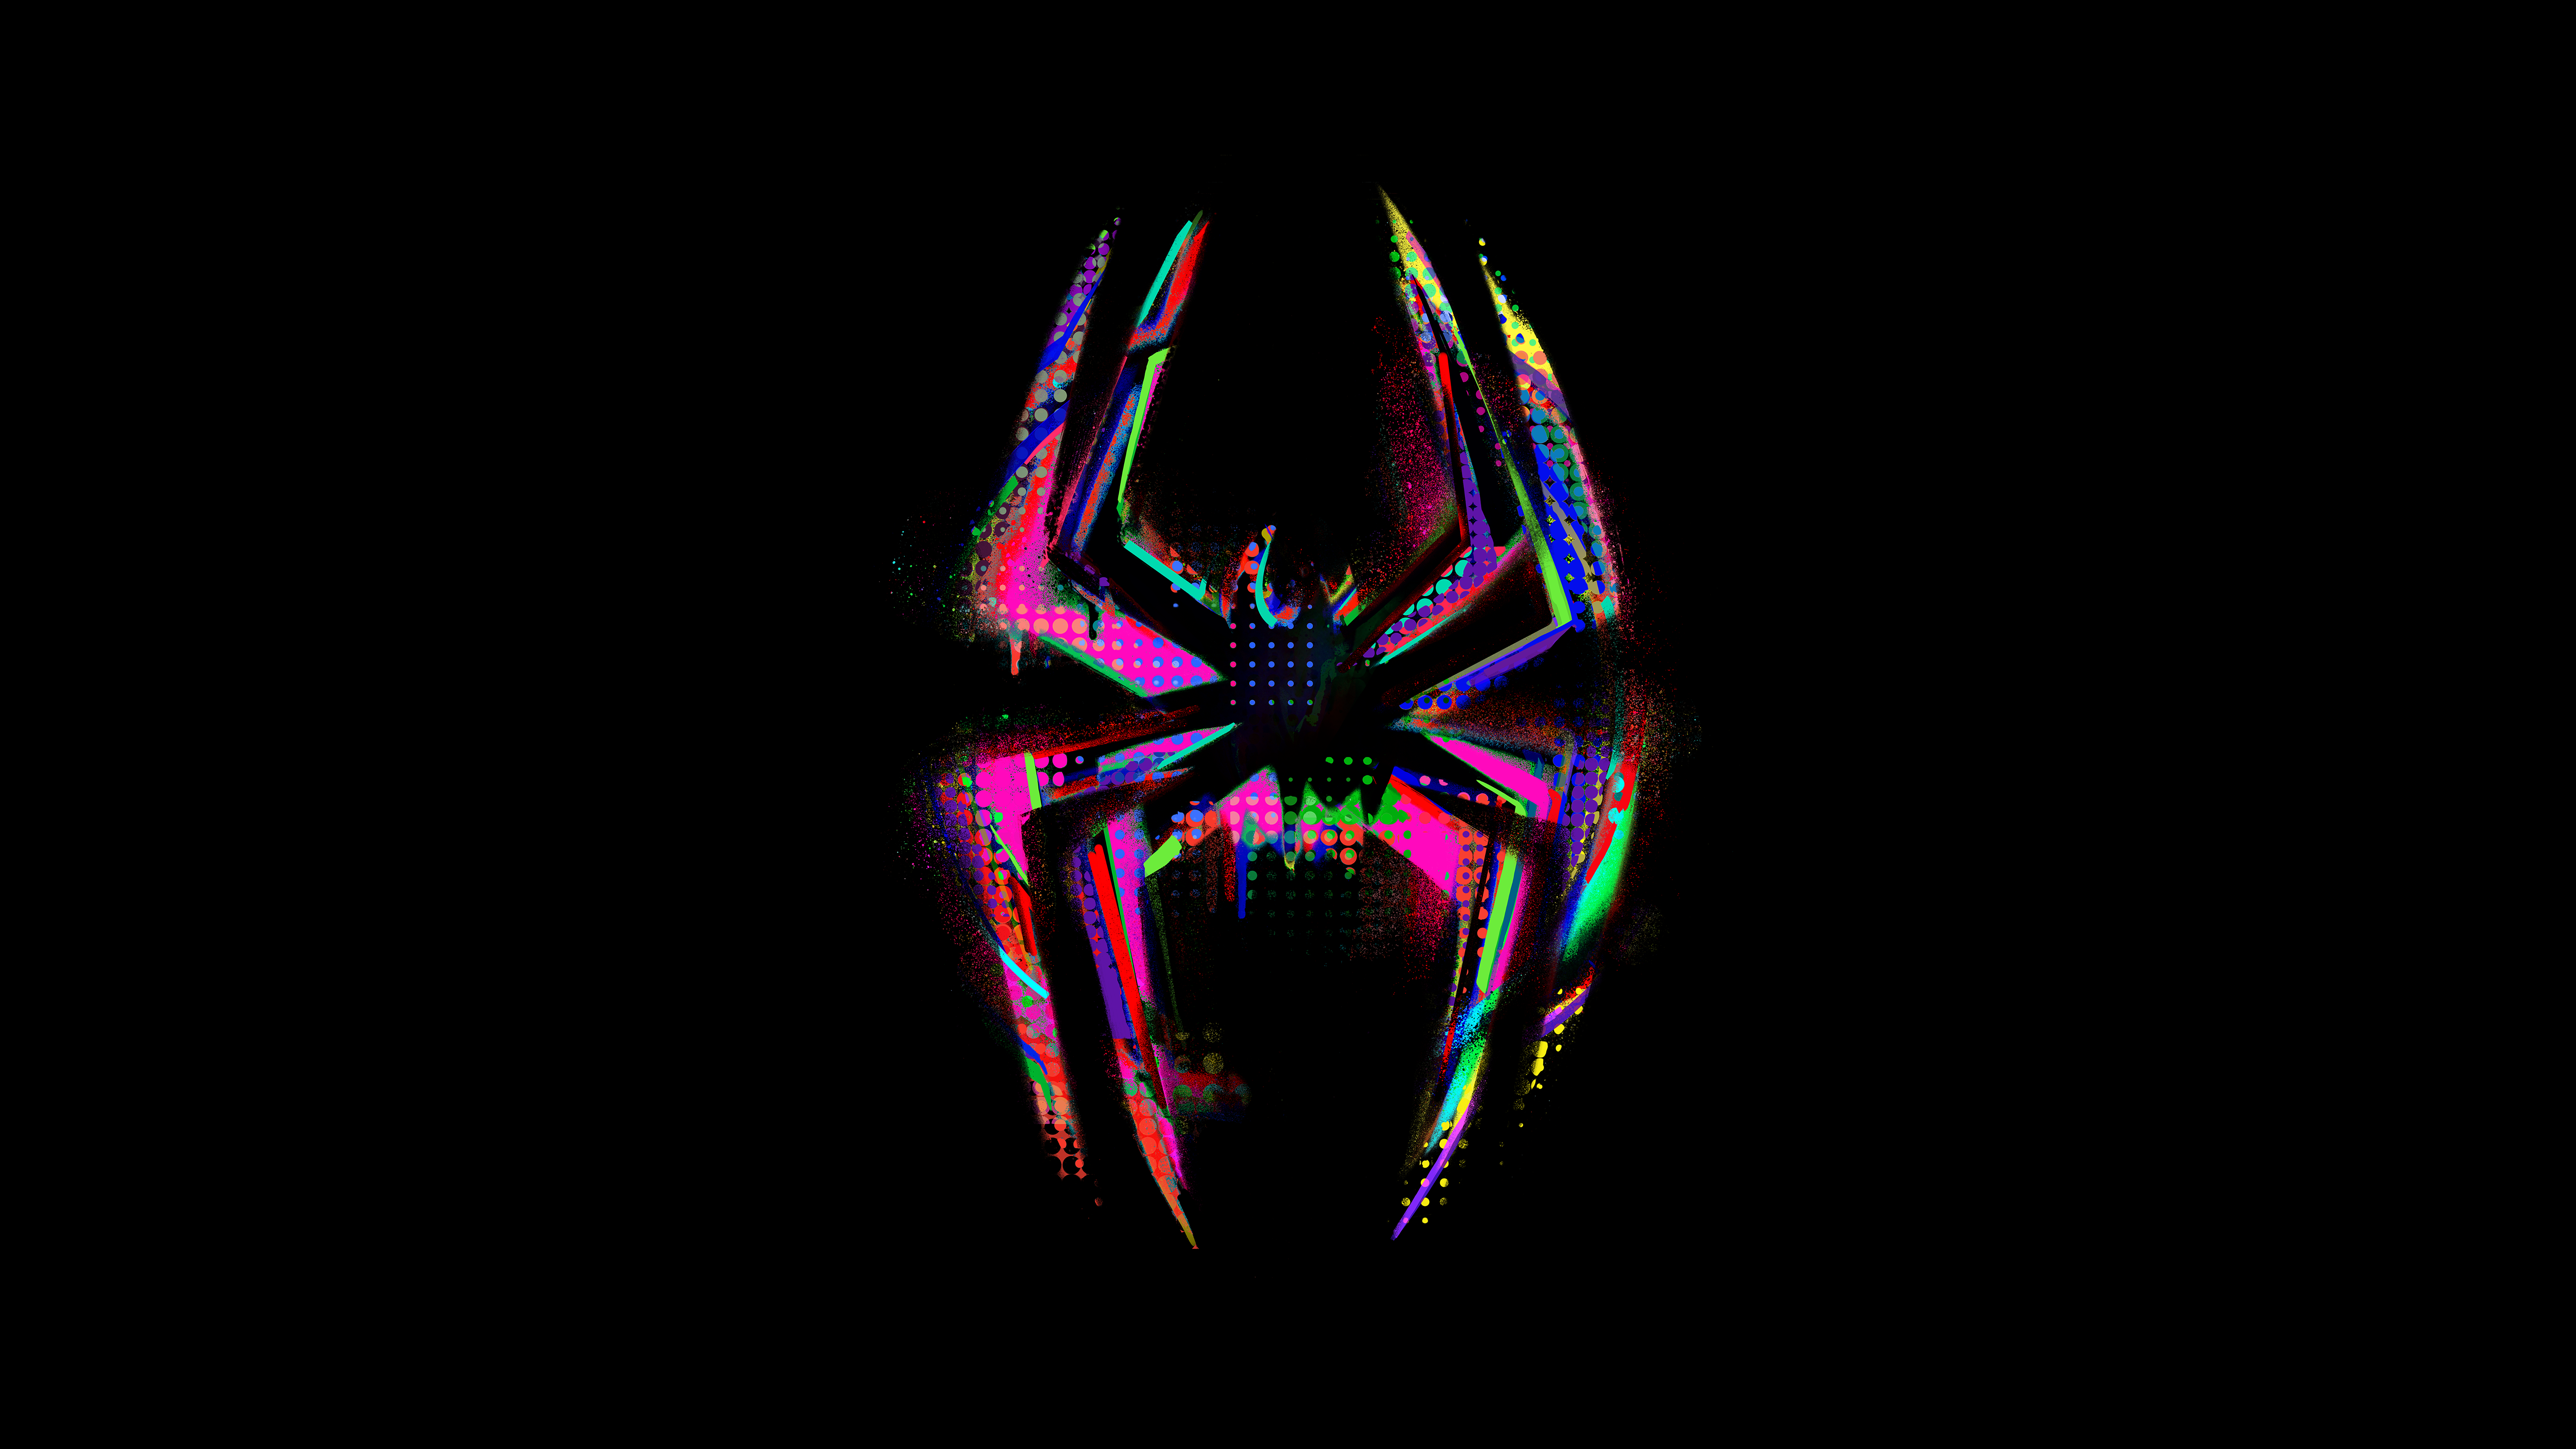 General 7680x4320 Spider-Man: Across the Spider-Verse Spider-Man logo black background simple background digital art minimalism superhero